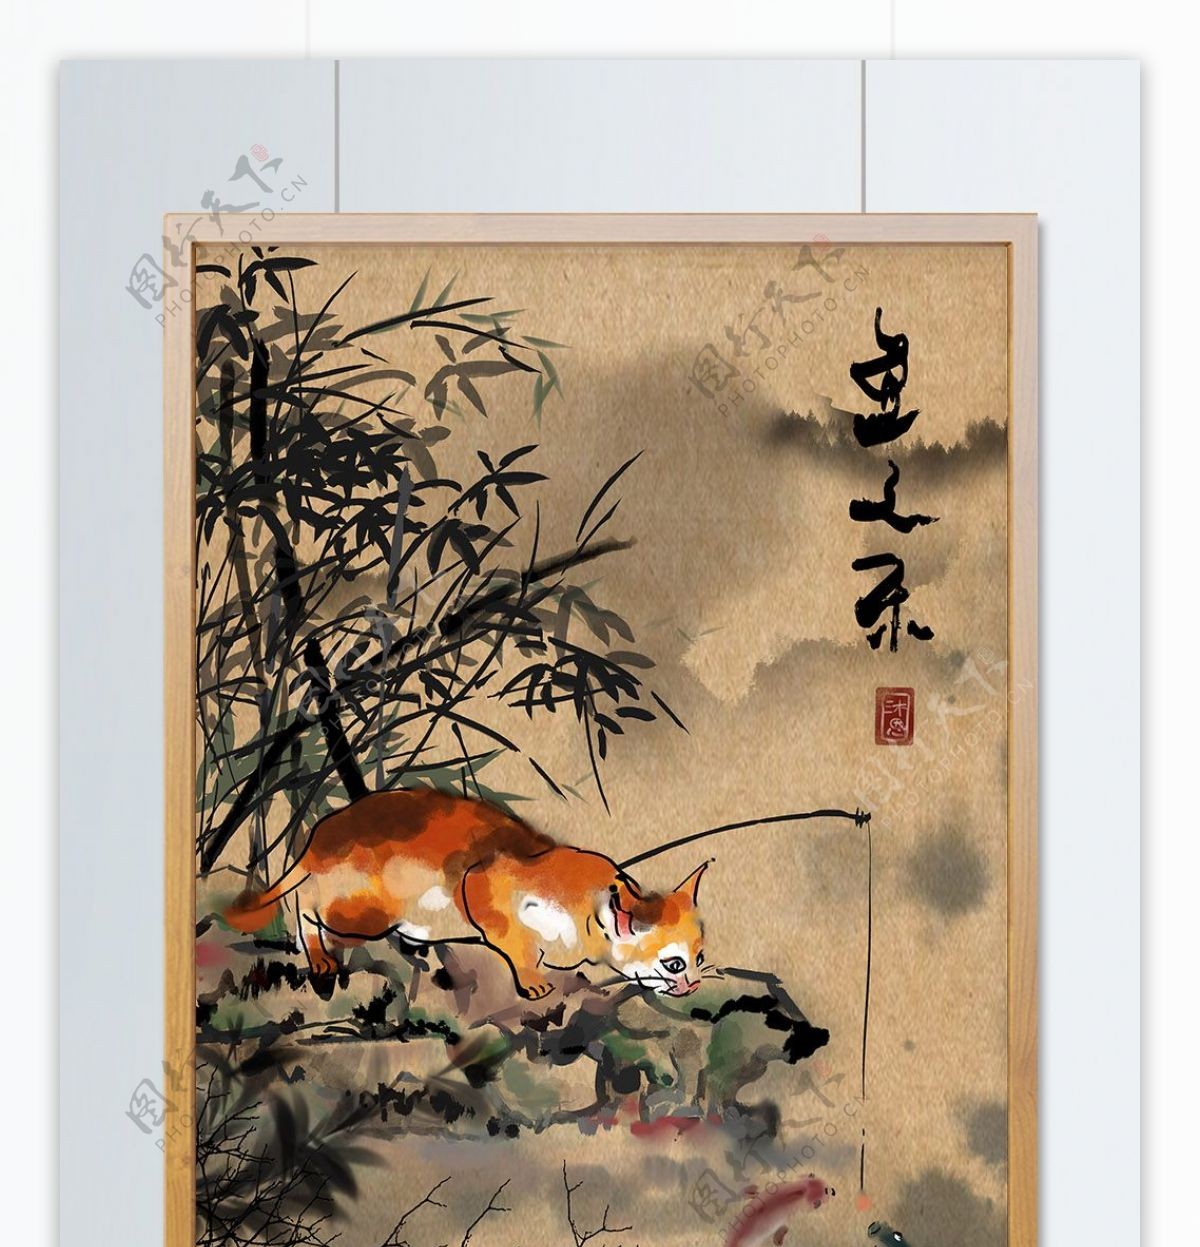 水墨彩绘猫咪钓鱼鱼之乐中国风山水复古国画